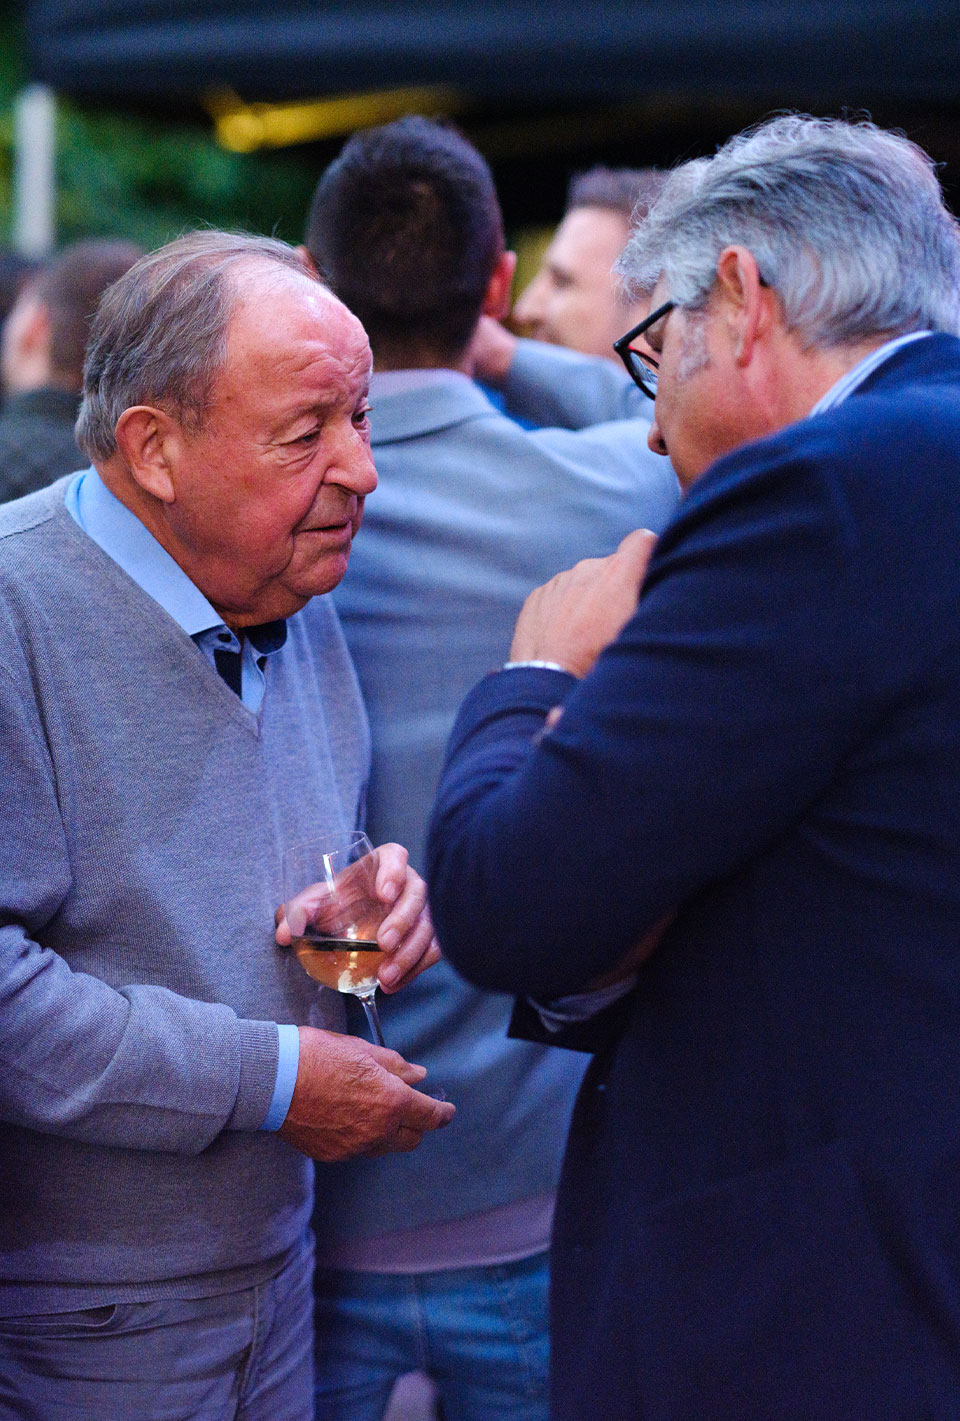 Zwei ältere Männer in Anzügen unterhalten sich bei einer Veranstaltung im Freien.